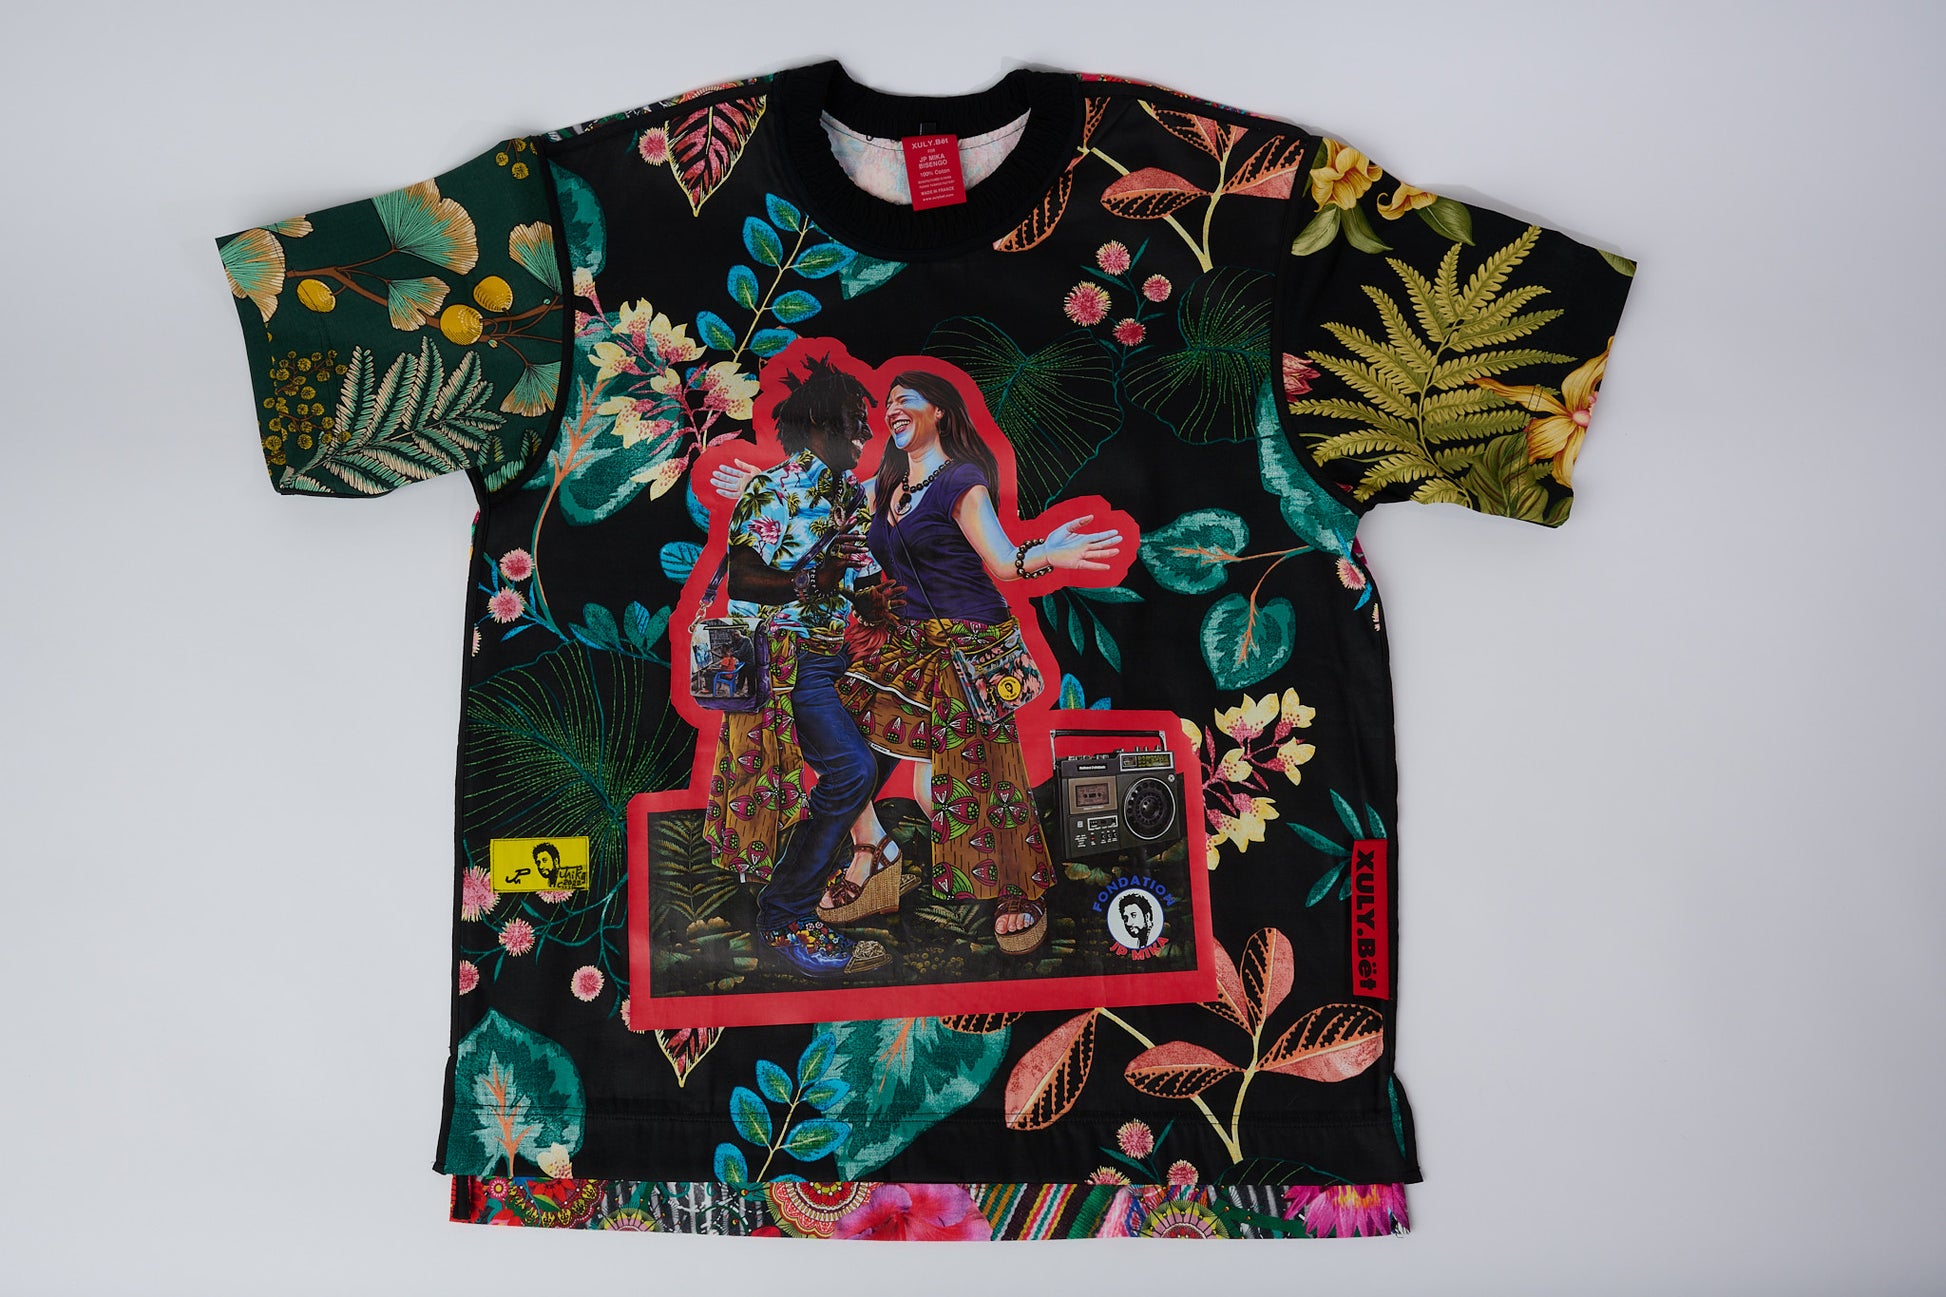 T-shirt BISENGO JP MIKA x XULY-BËT - Numéroté 15/65 - Taille L - Wearable-art inspiré du tableau "Tala Mabina ya Mboka na Biso" (Regarde la danse de notre pays) de la série de toiles BISENGO de JP MIKA.